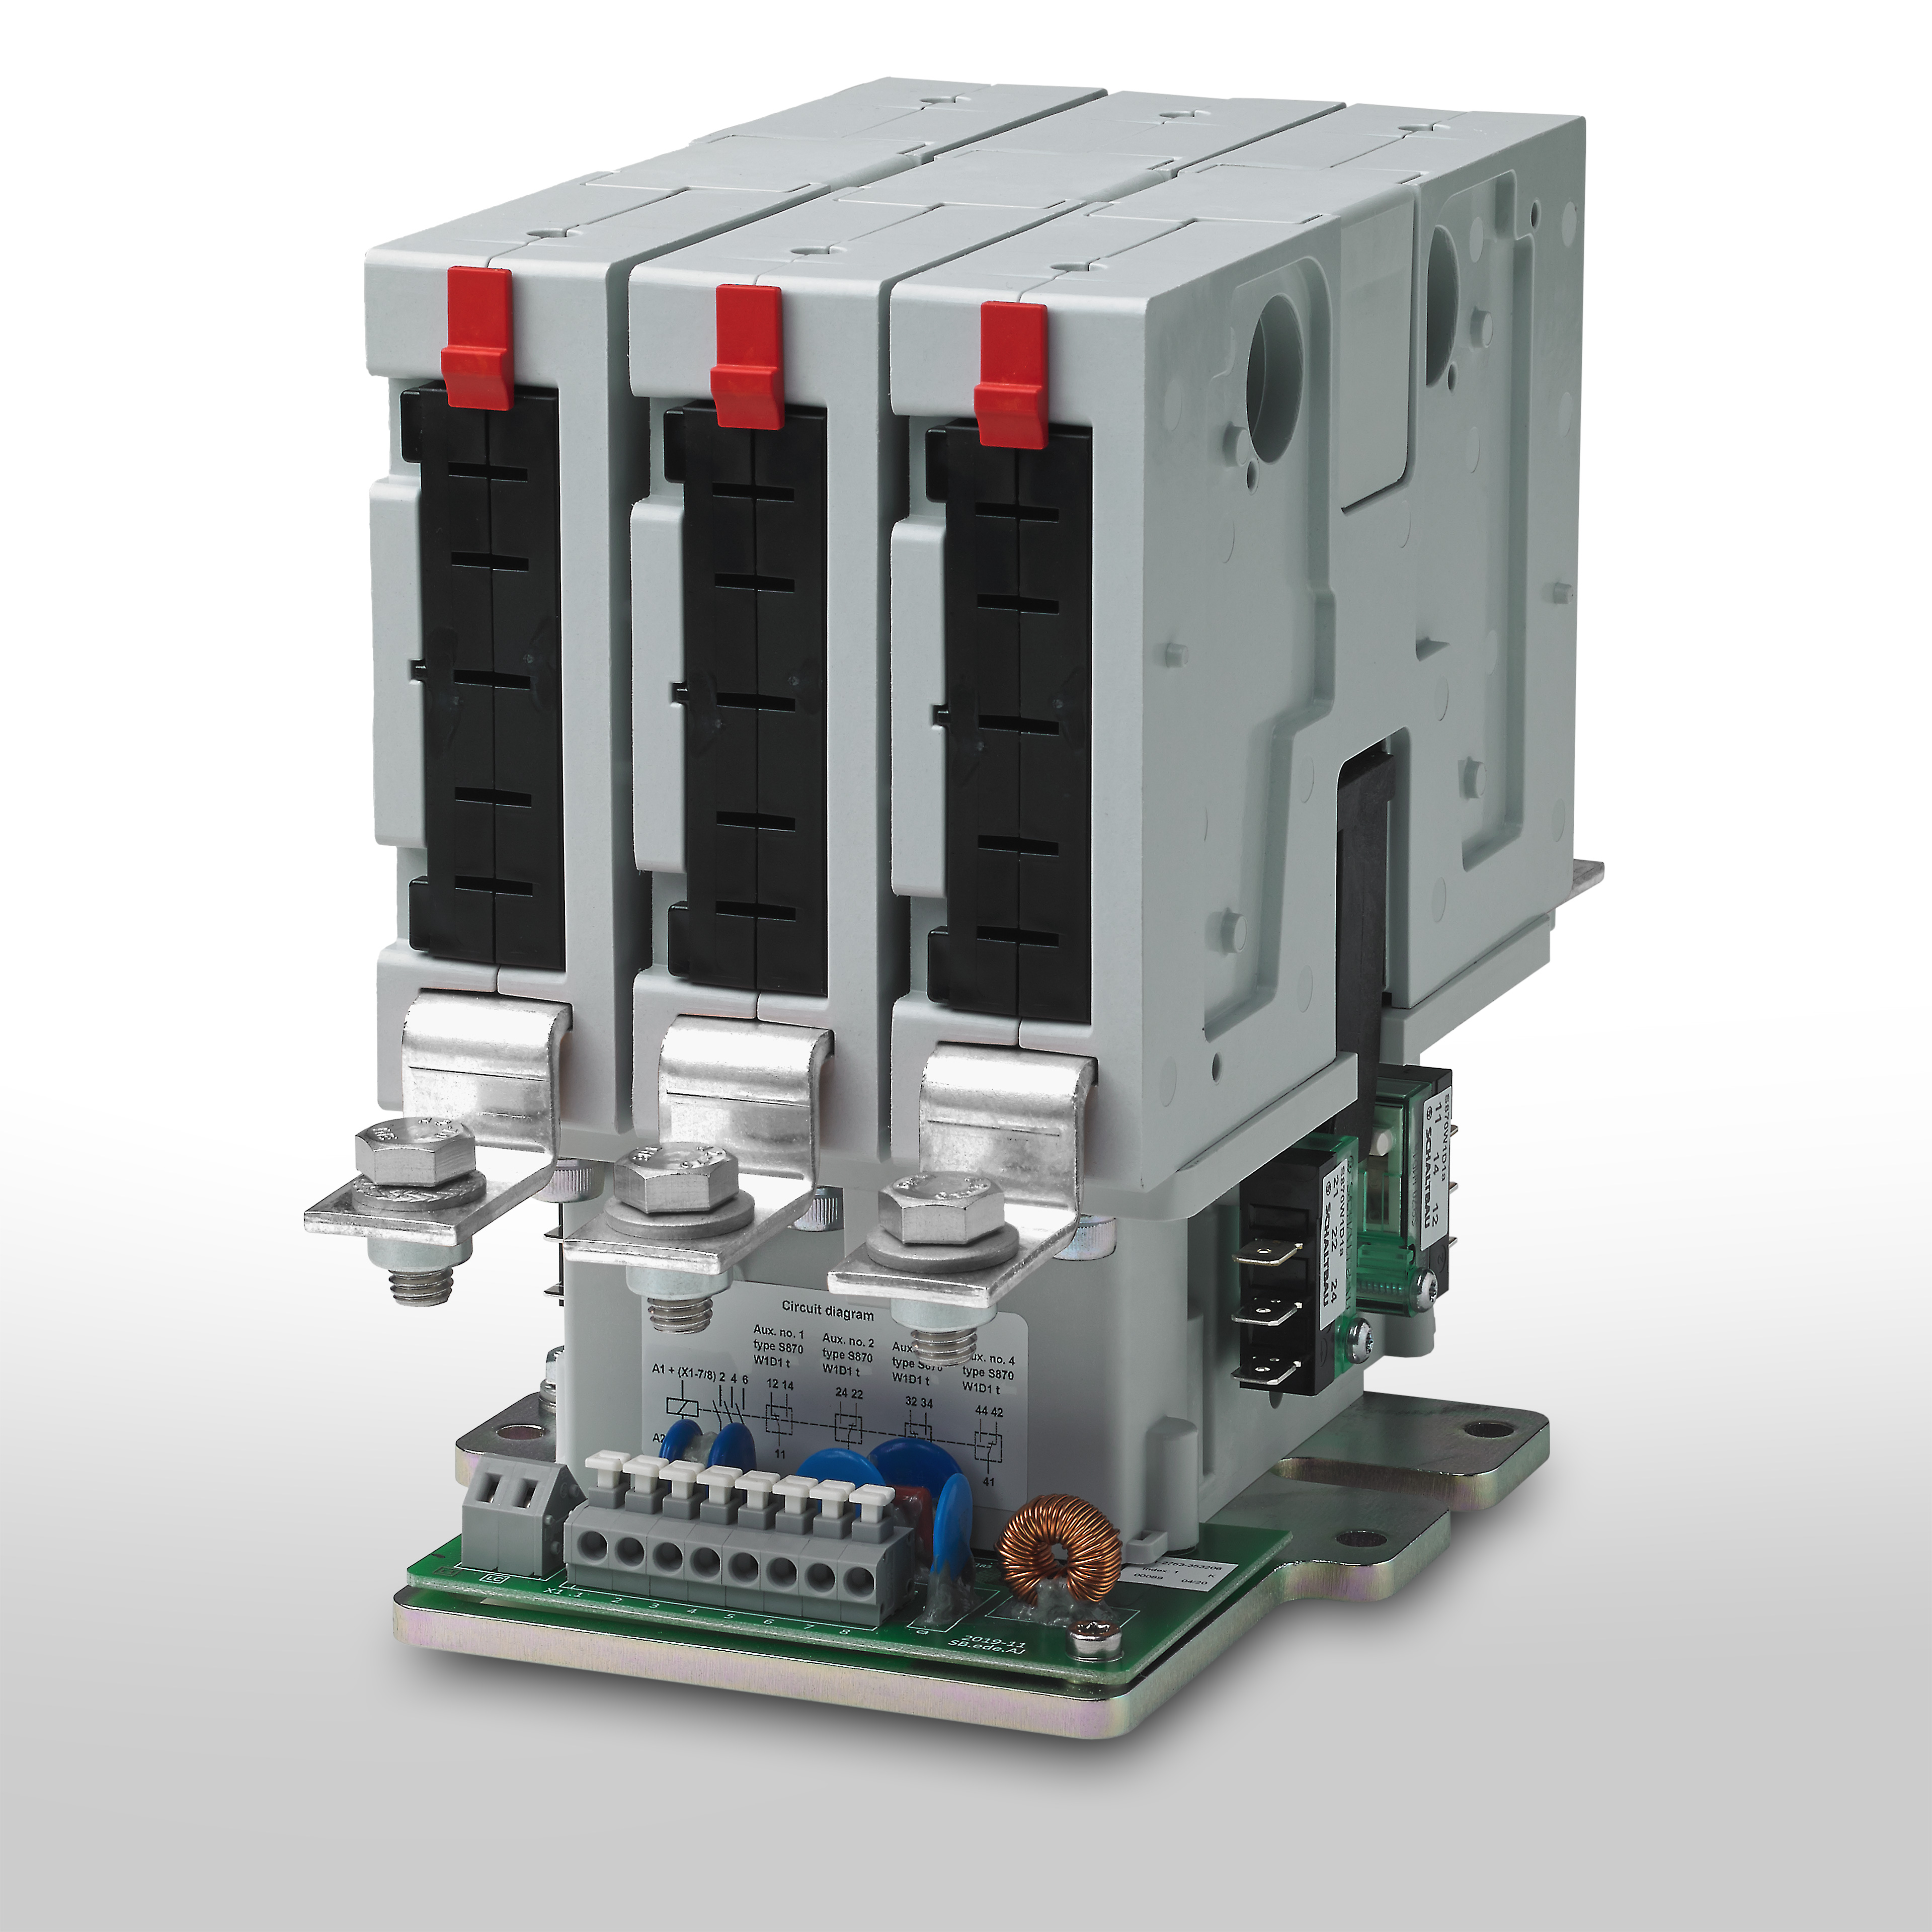 CF — многополюсные силовые контакторы переменного тока в классе мощности до 3000 В